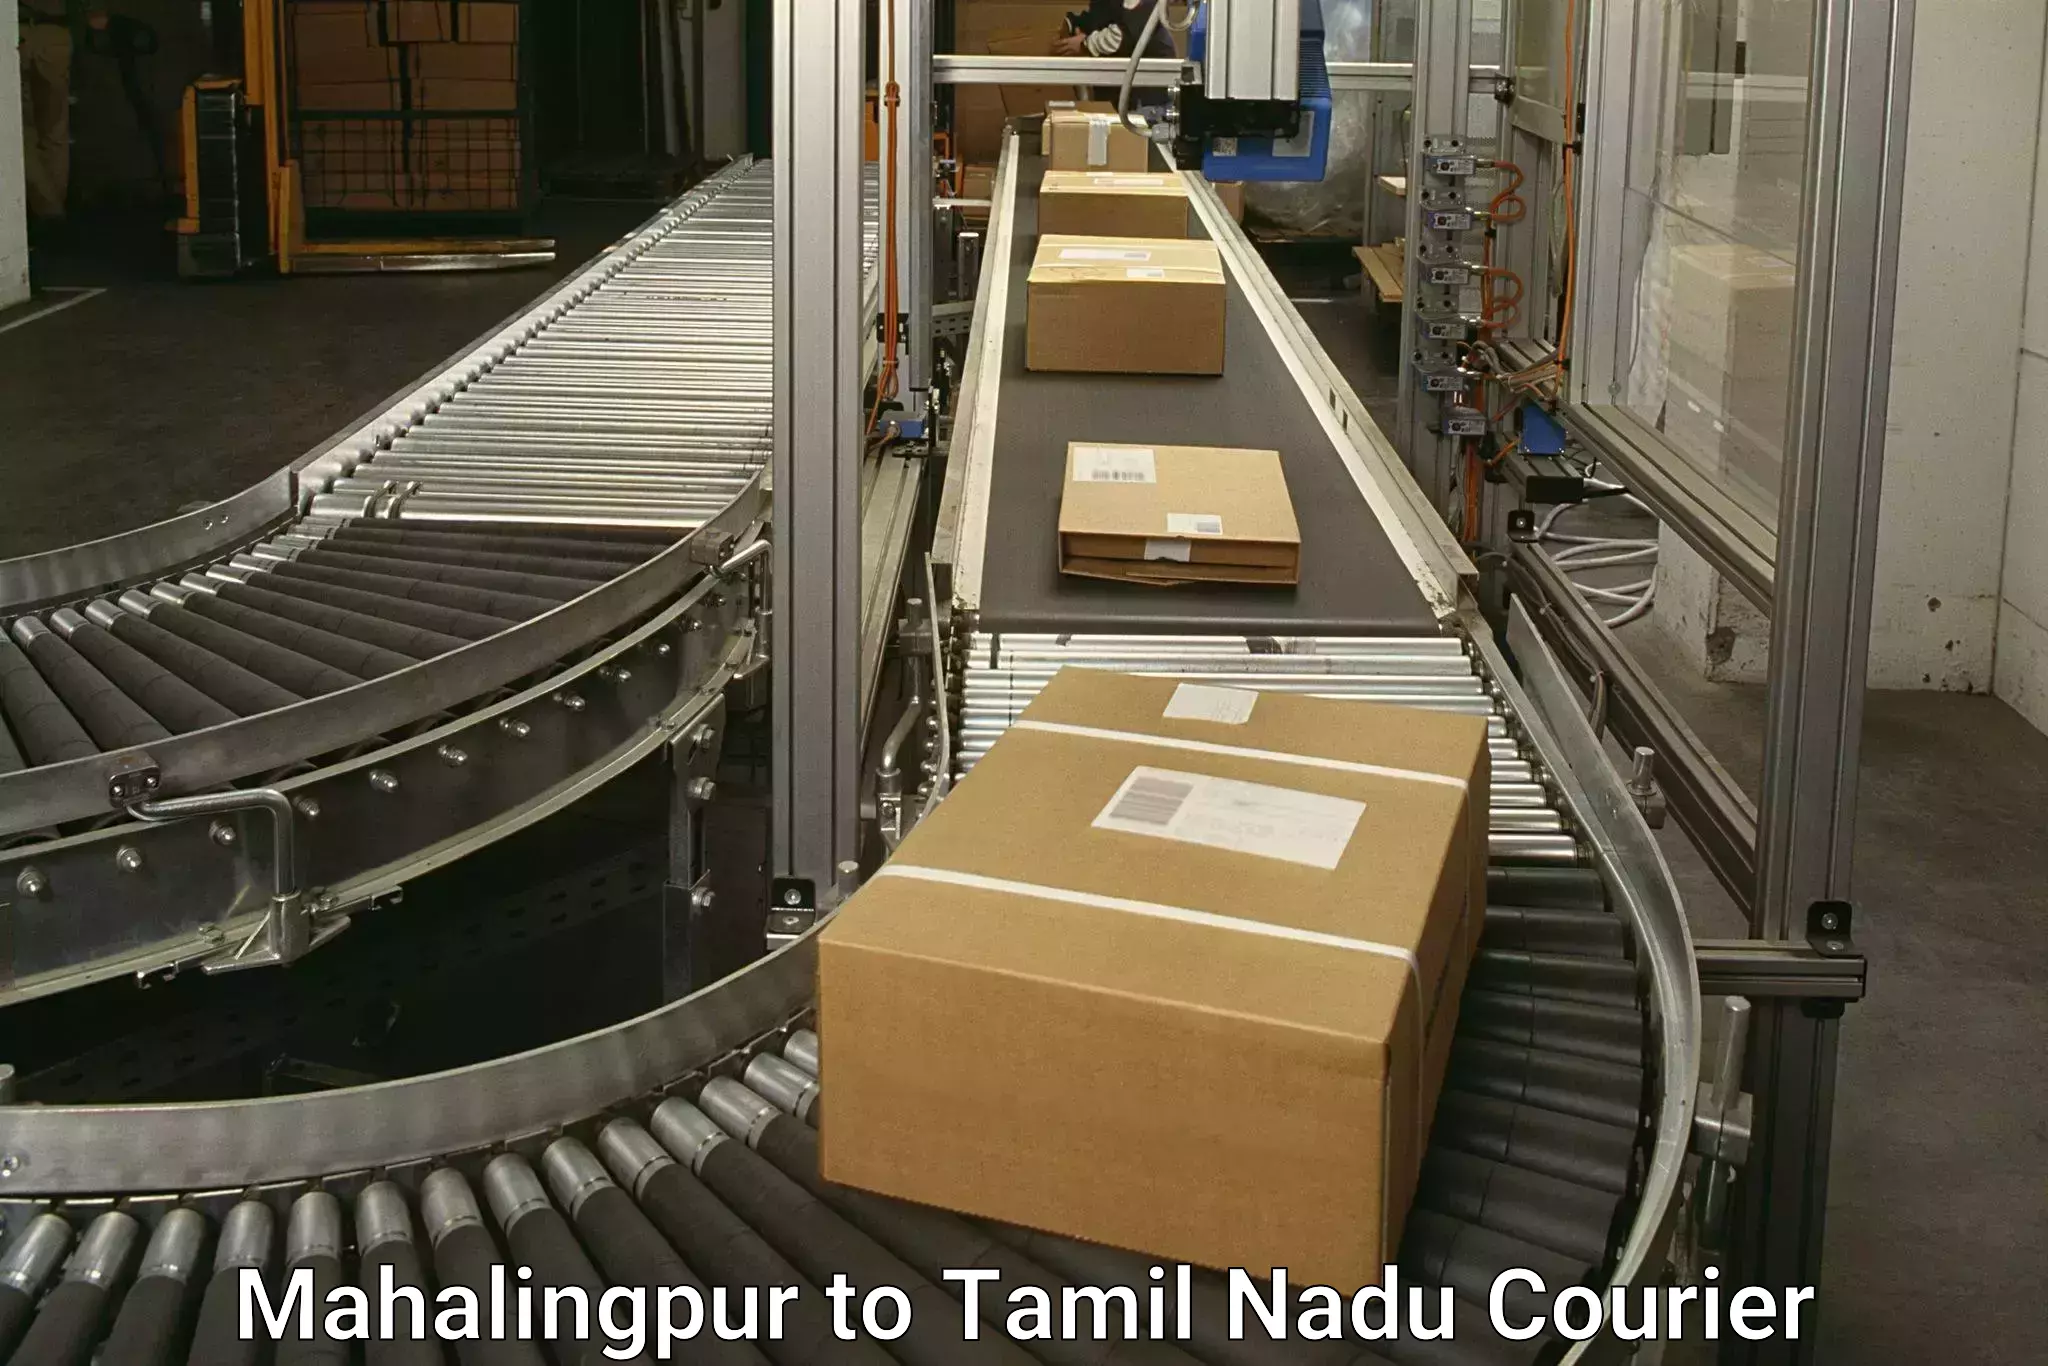 Fast shipping solutions Mahalingpur to Virudhunagar